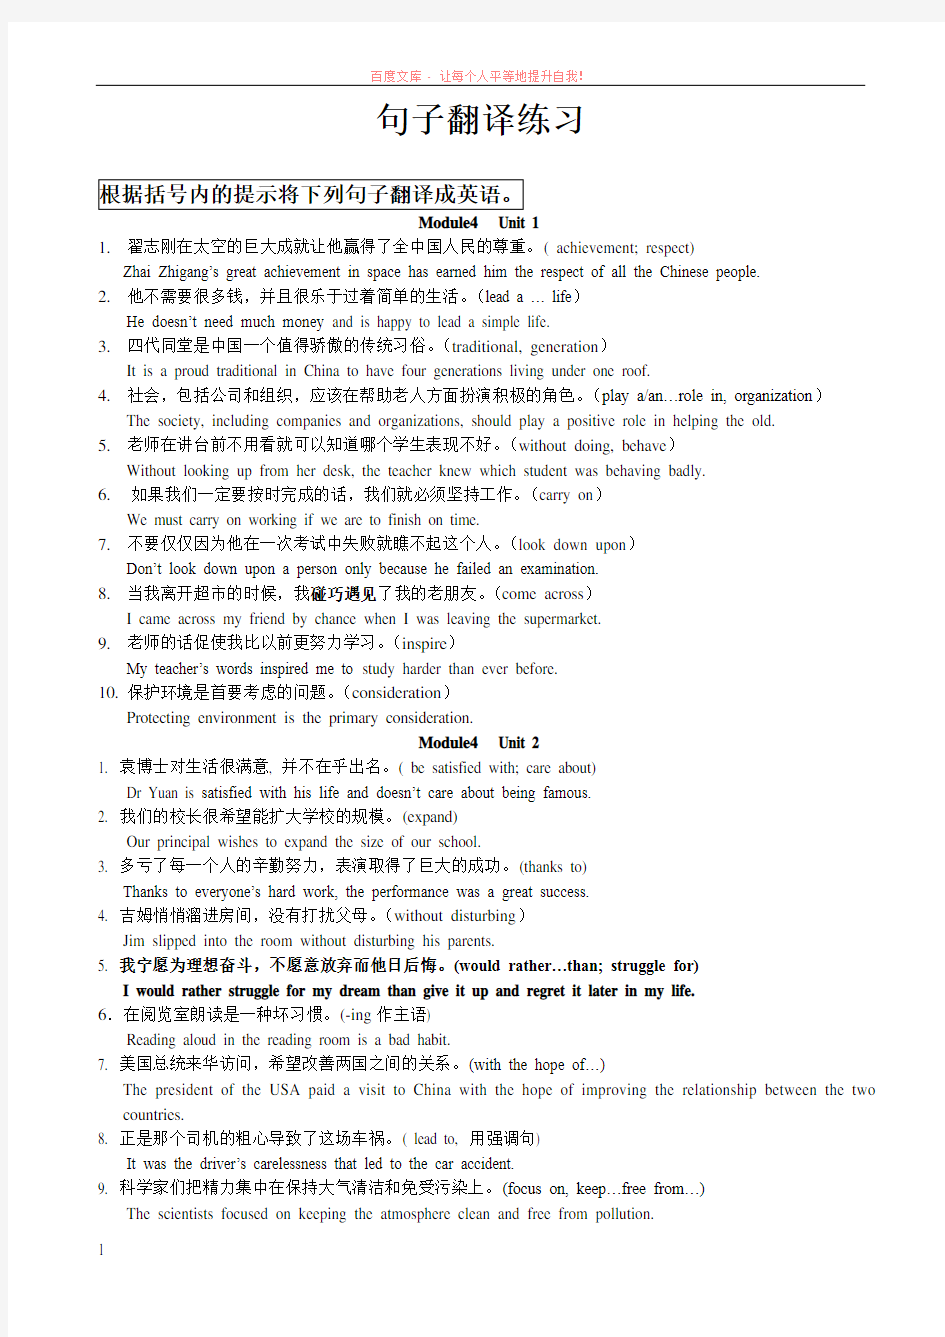 高中英语模块复习必背句子翻译250句(必修4) (1)